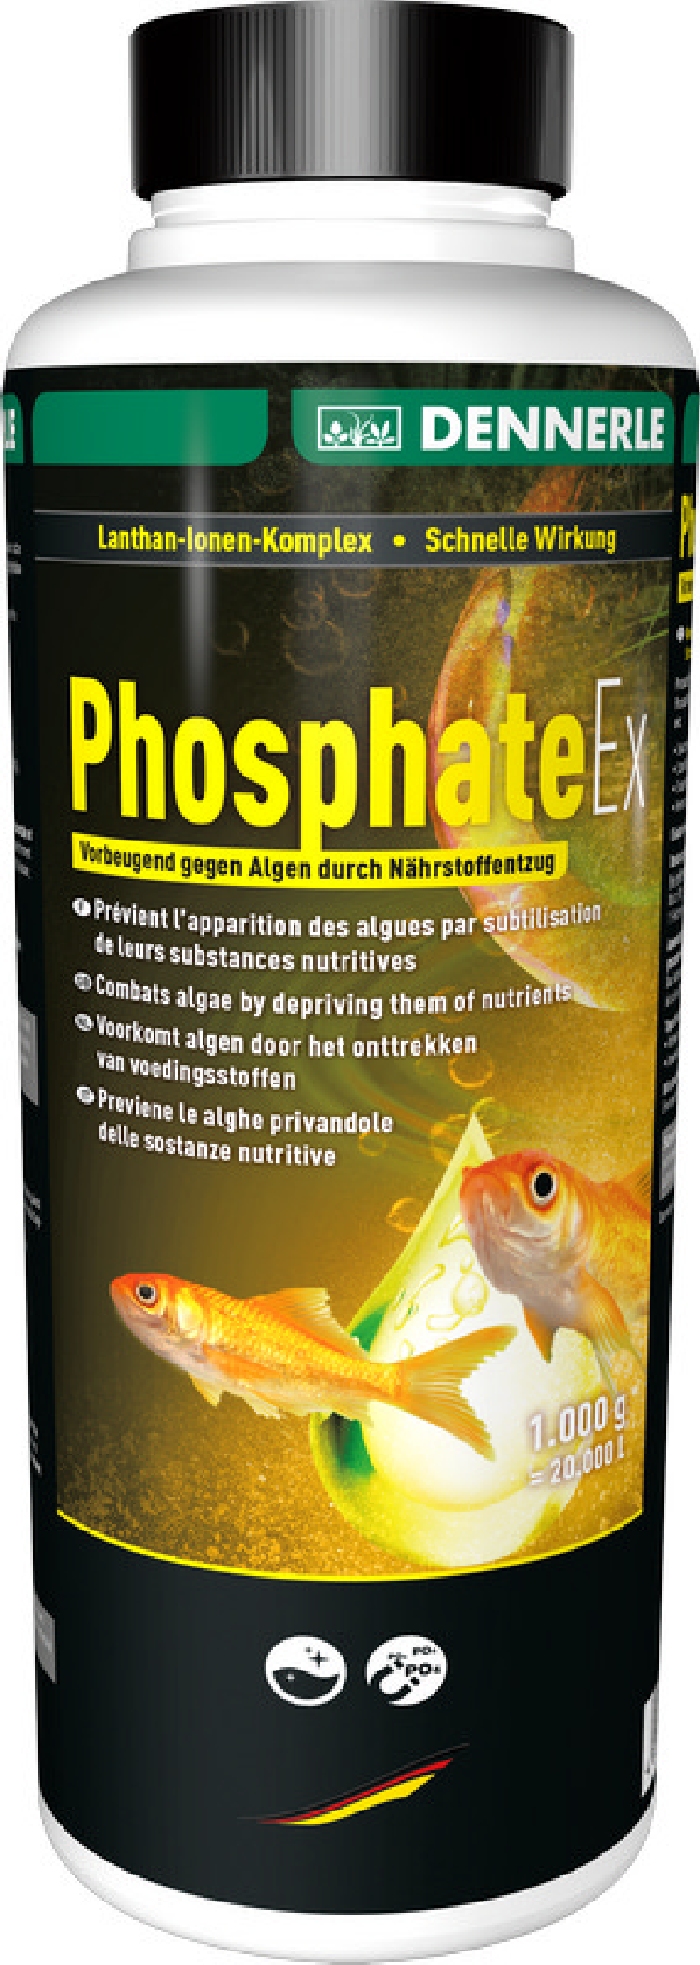 Dennerle Algenschutz Phosphat Ex 500 g oder 1000g NEU